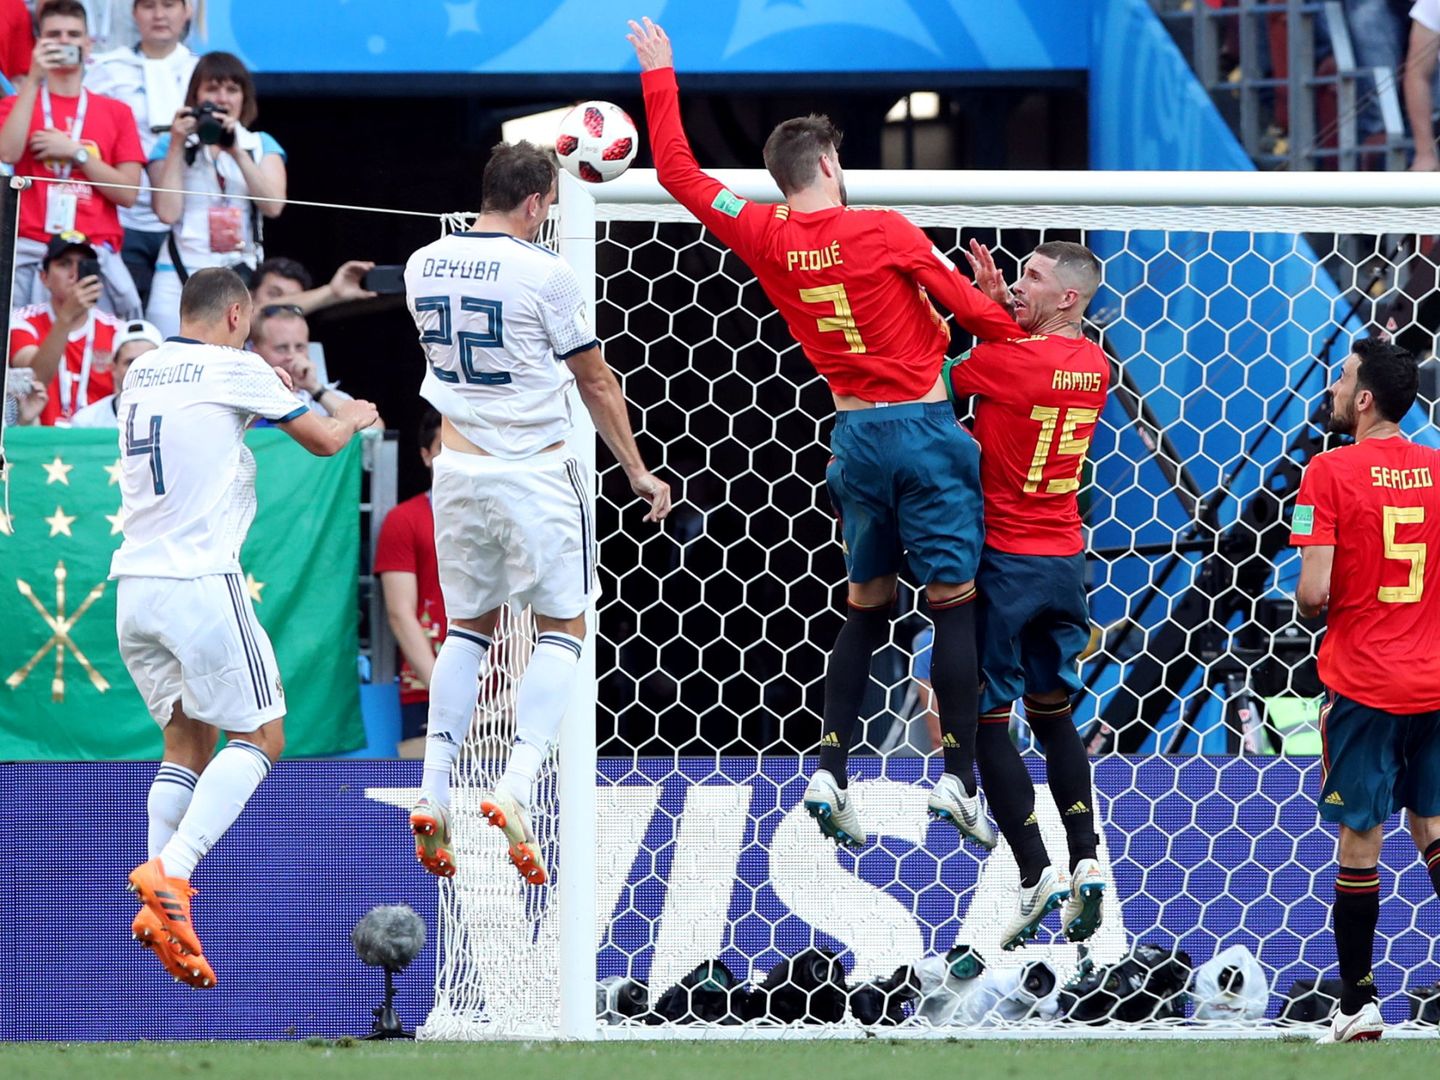 Piqué no quería, pero cometió penalti. Su brazo extendido taponó el remate de Dzyuba. (Reuters)